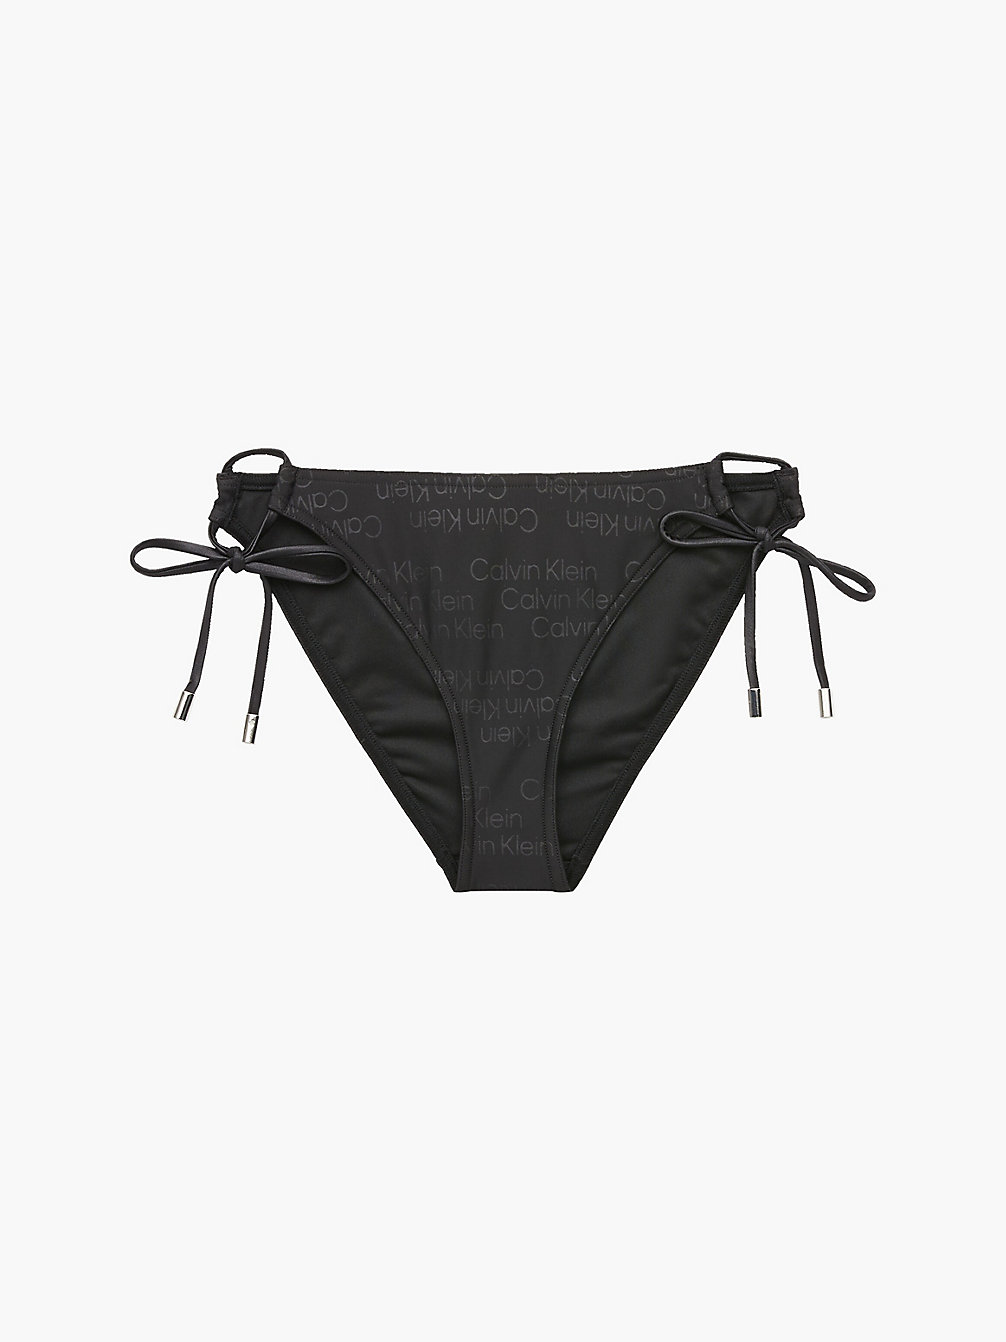 TONAL LOGO BLACK Bikinihose Zum Binden - Tonal Logo undefined Damen Calvin Klein